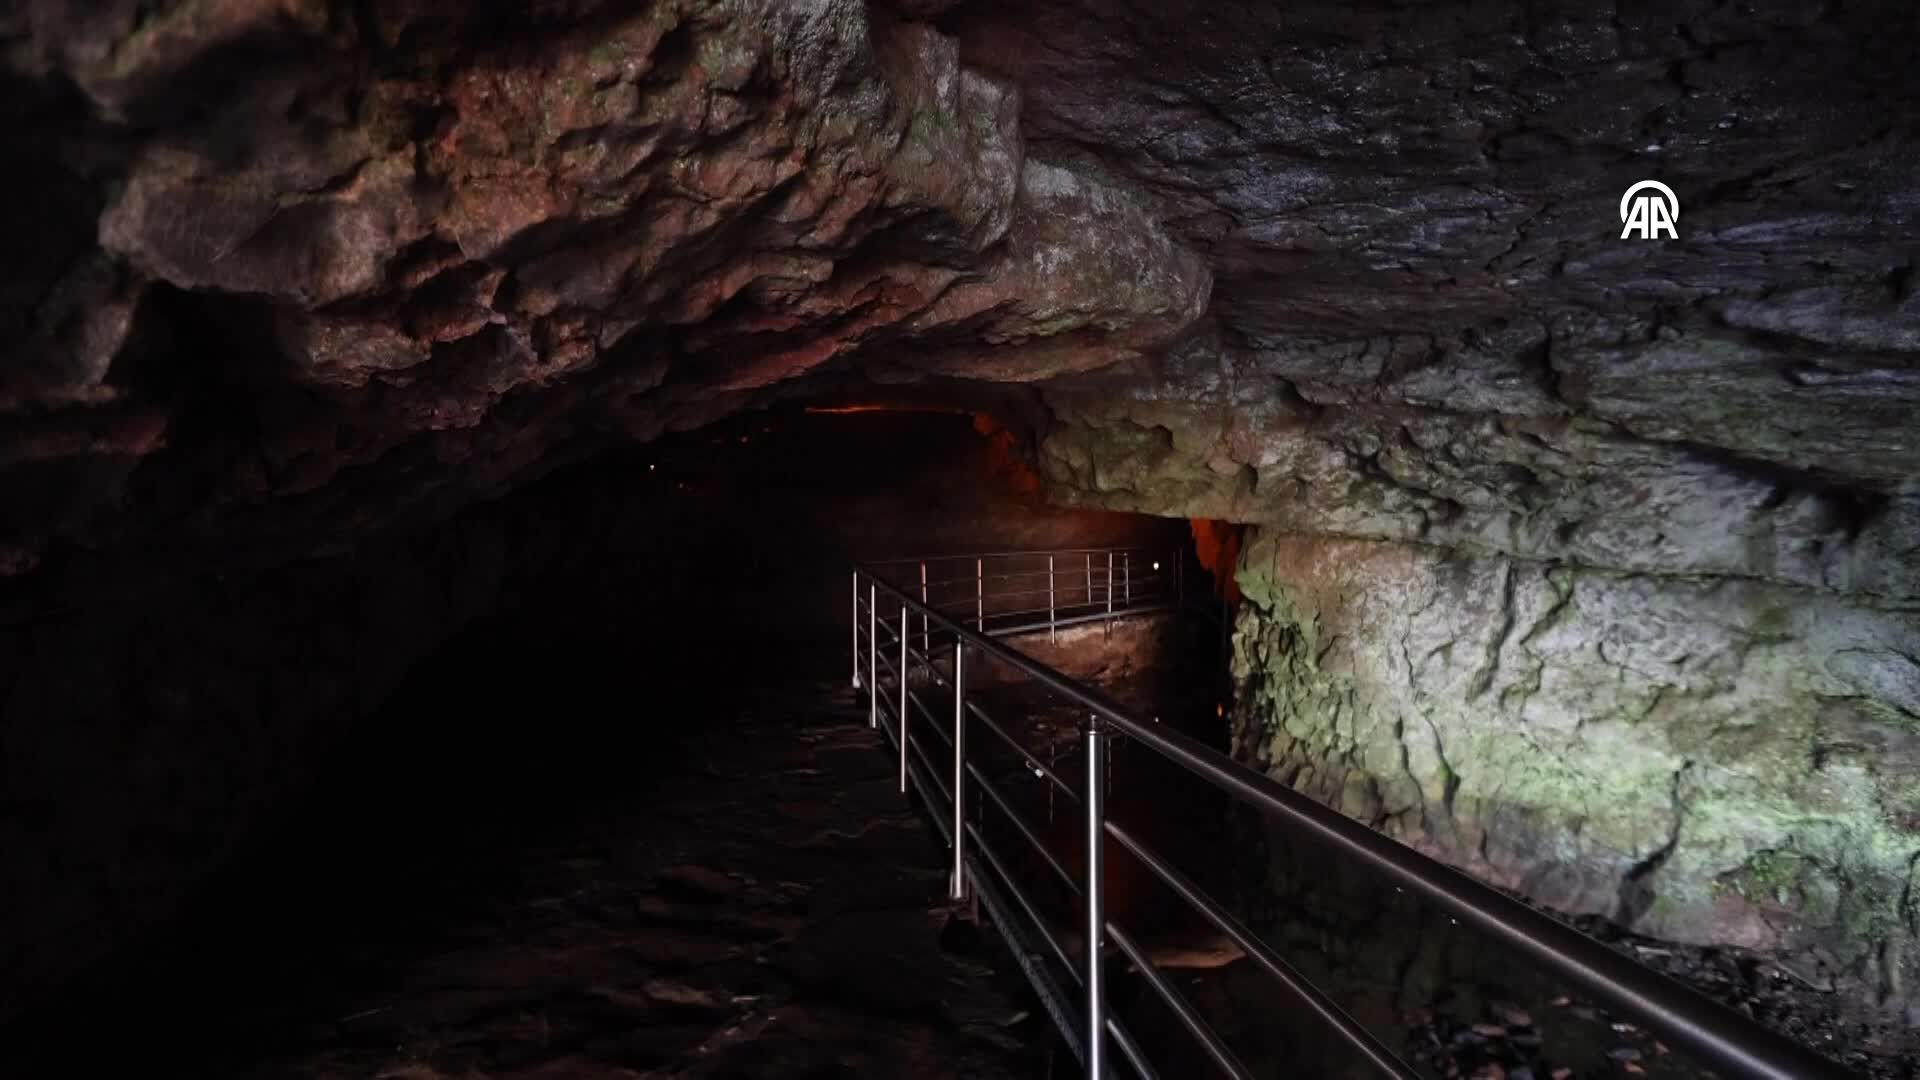 DOSYA HABER/TÜRKİYE’NİN MAĞARALARI – Doğu Karadeniz’in mağaraları her mevsim gezginlerin rotasında